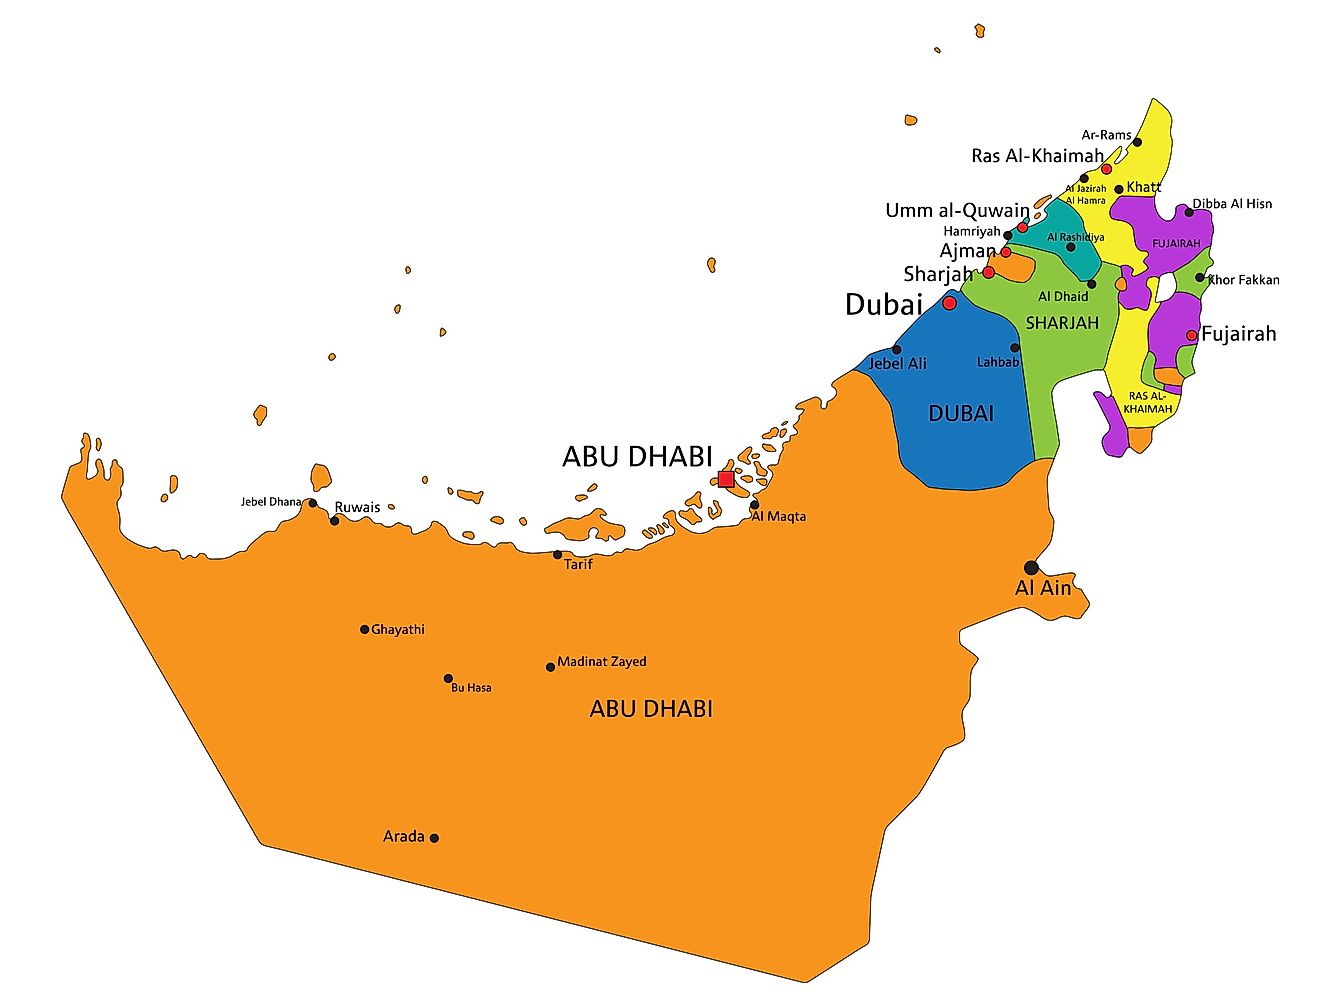 Political Map of the United Arab Emirates (UAE) showing the 7 Emirates.